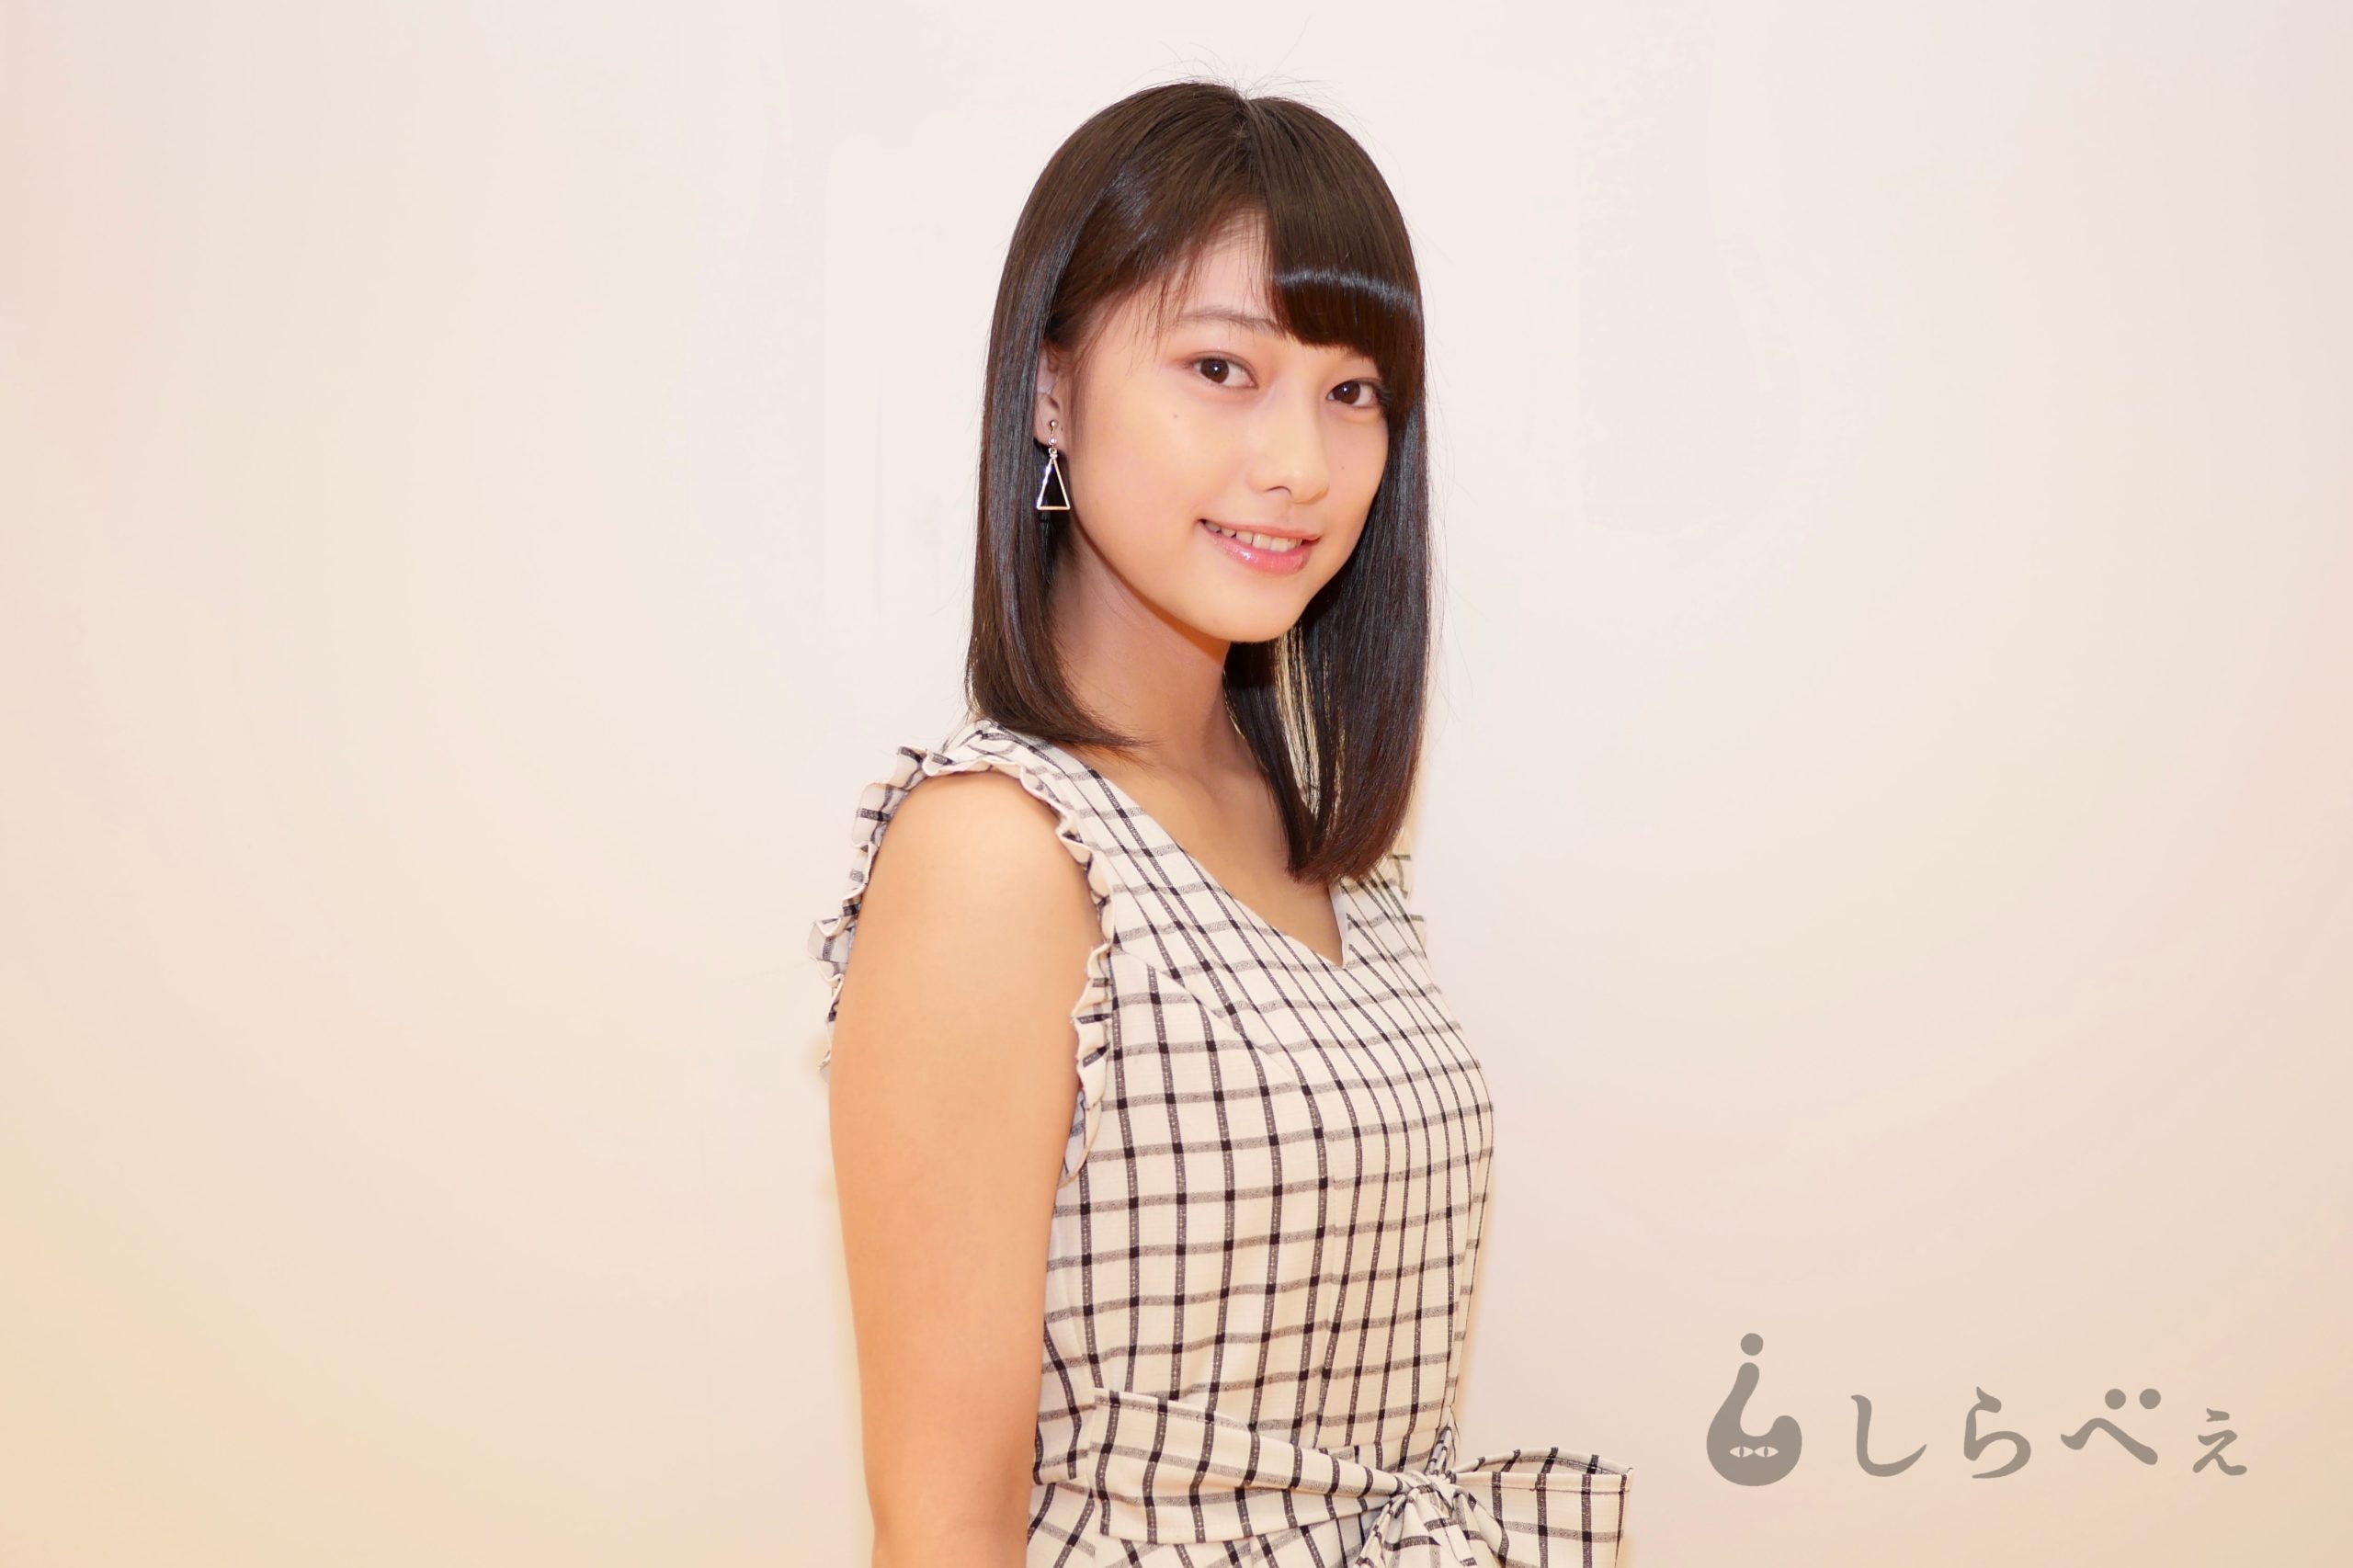 国民的美少女 玉田志織が初写真集を発売 負けず嫌いで初々しい16歳の素顔に迫る Sirabeetamadashiori7